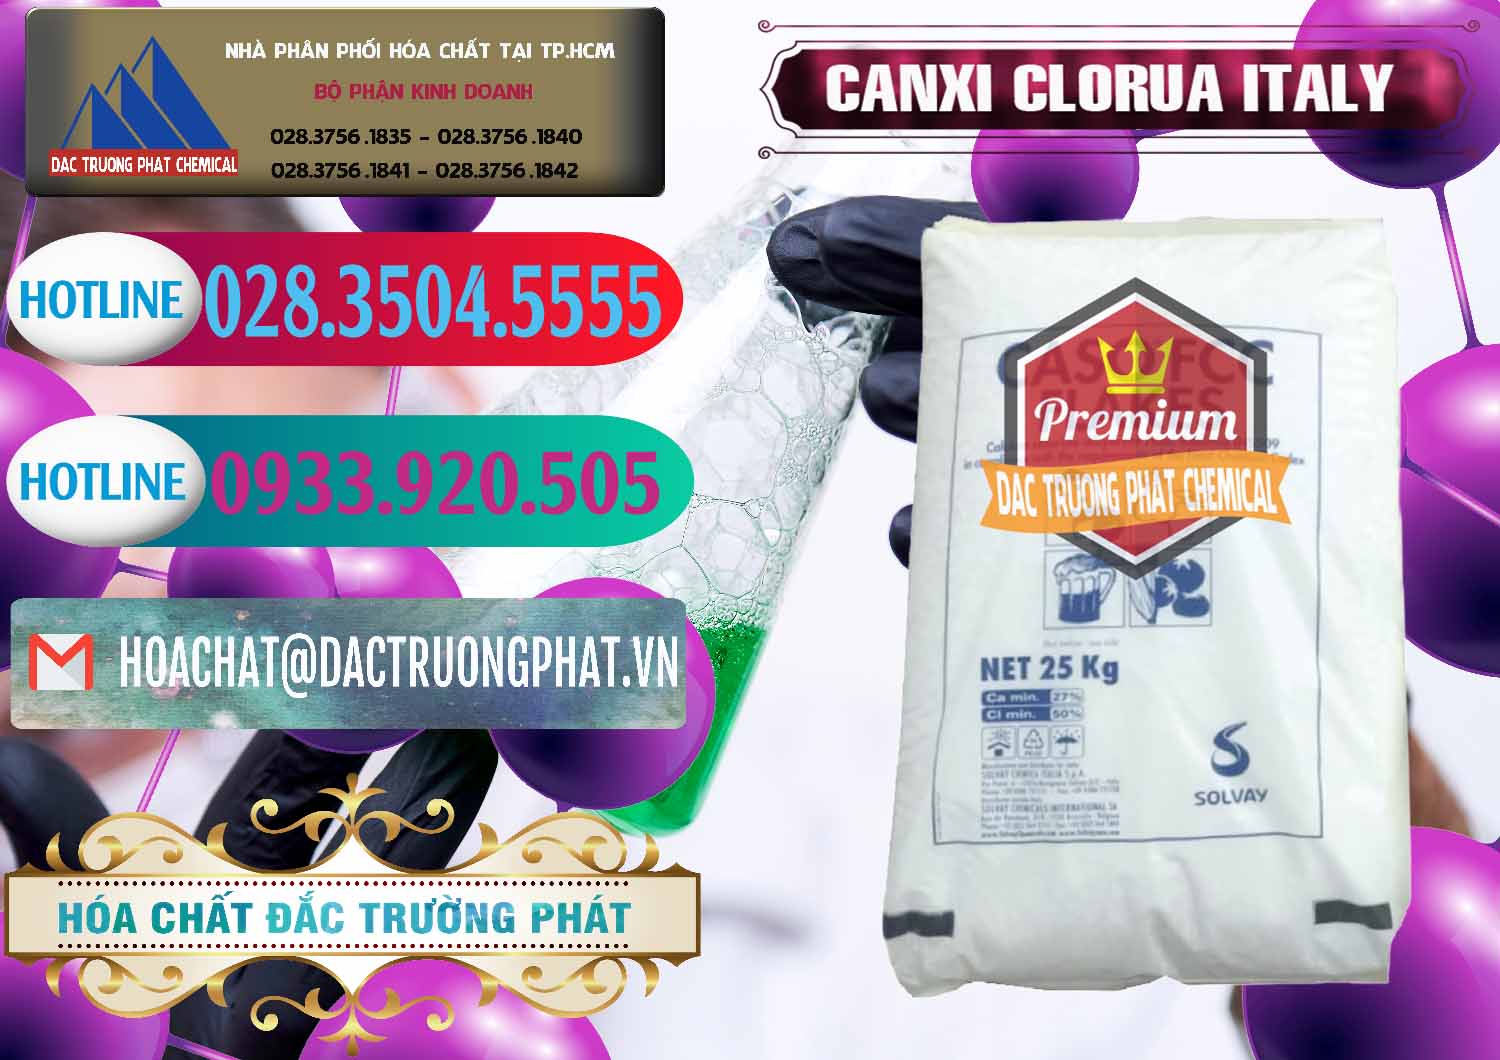 Đơn vị chuyên bán - cung cấp CaCl2 – Canxi Clorua Food Grade Ý Italy - 0435 - Chuyên bán ( cung cấp ) hóa chất tại TP.HCM - truongphat.vn